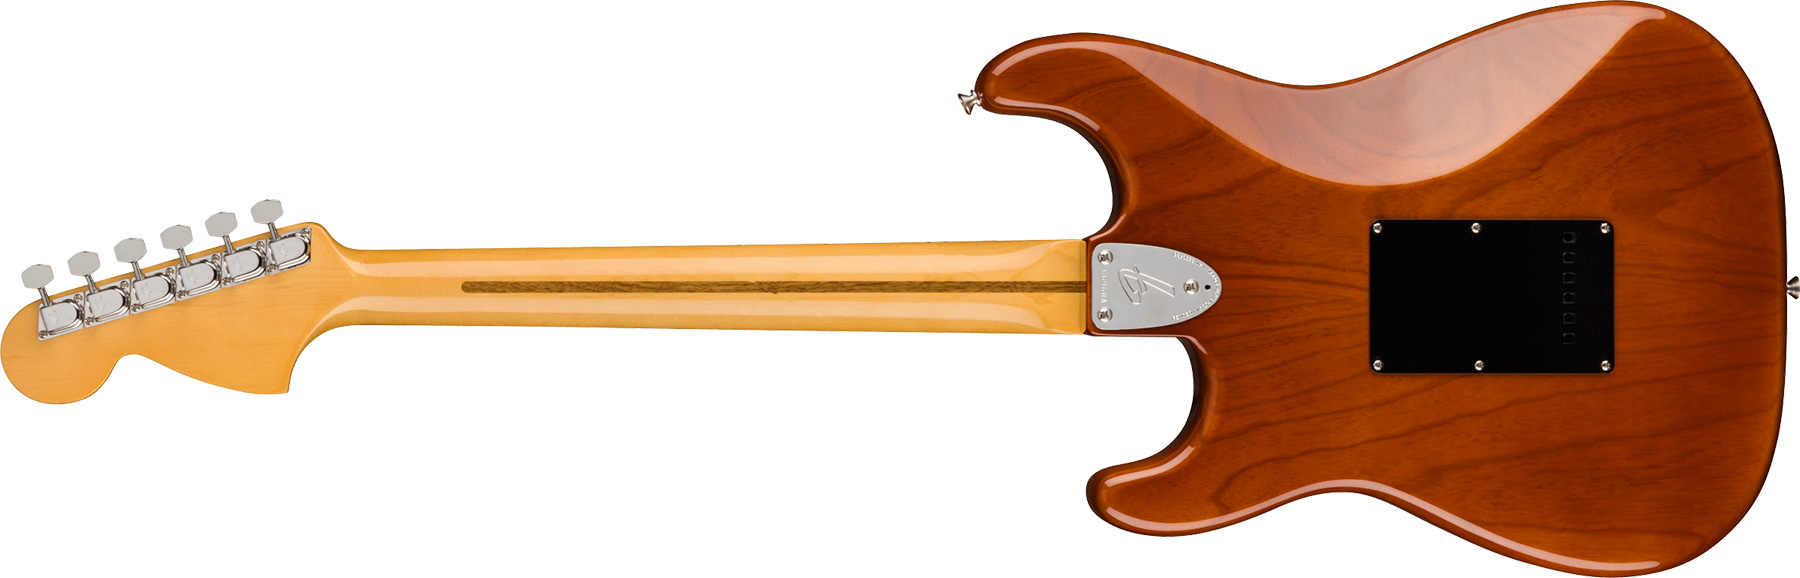 Fender Strat 1973 American Vintage Ii Usa 3s Trem Mn - Mocha - Guitare Électrique Forme Str - Variation 1